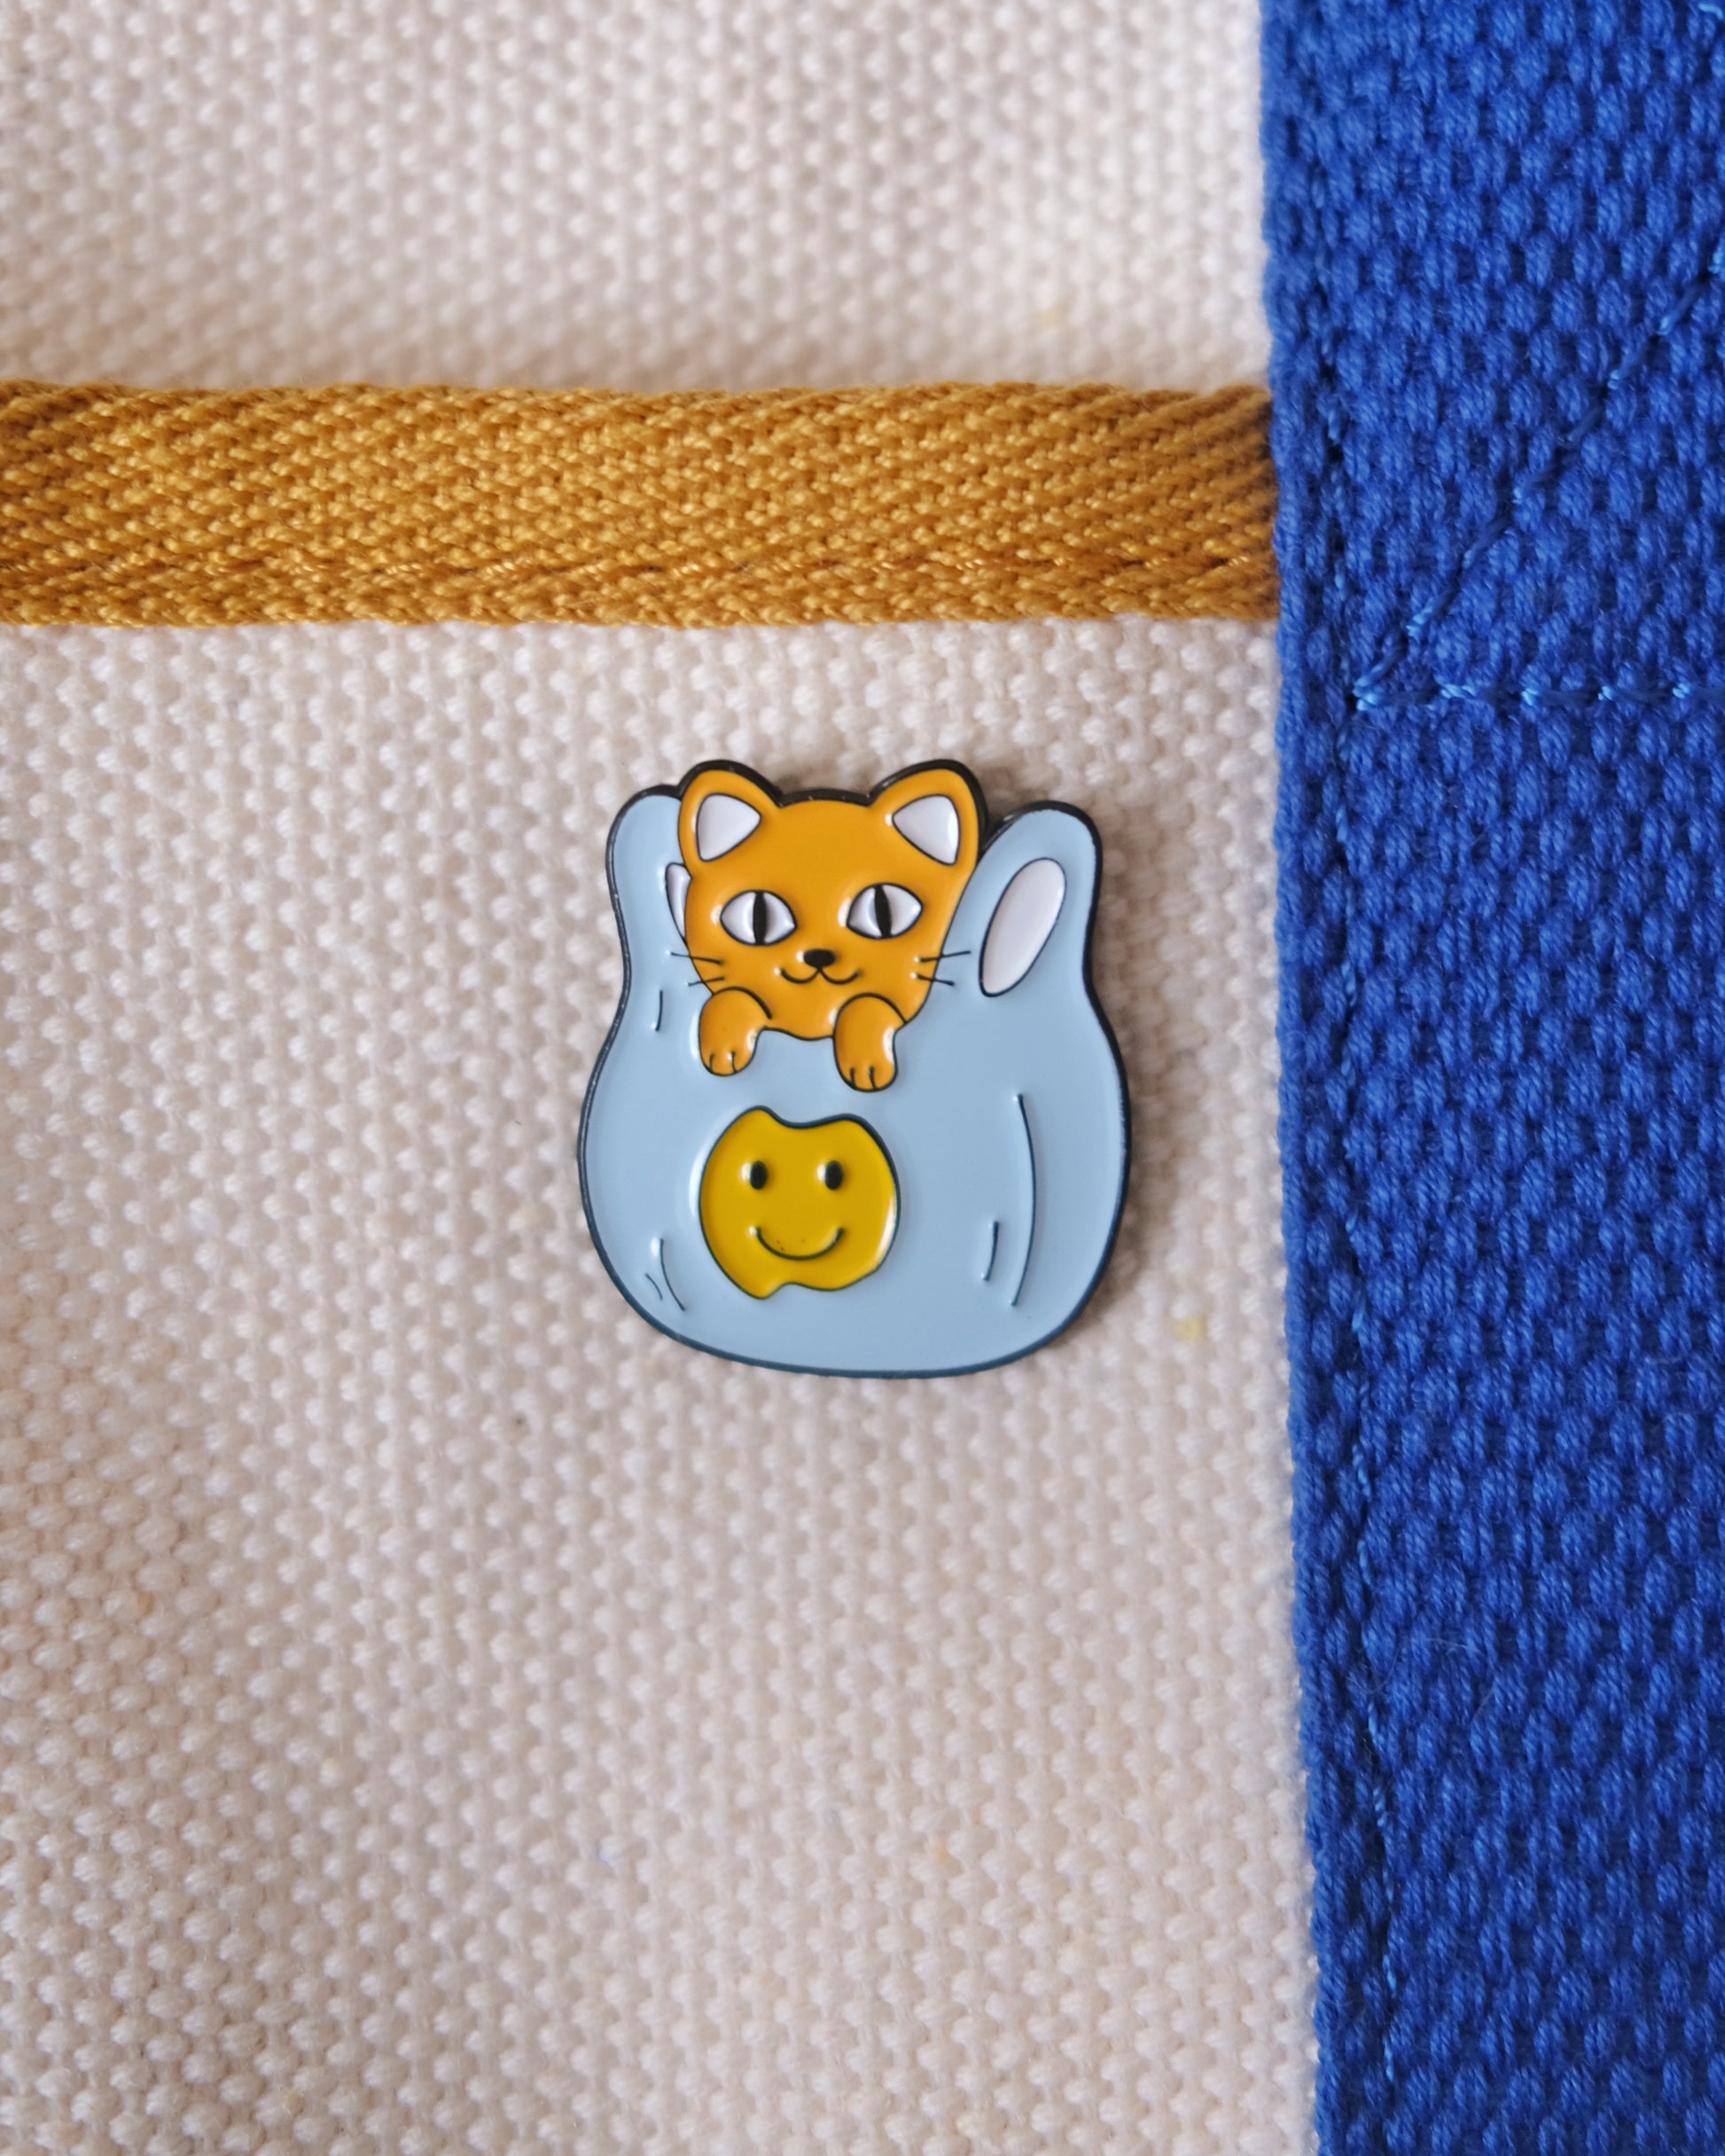 Plastic Bag Cat Enamel Pin.